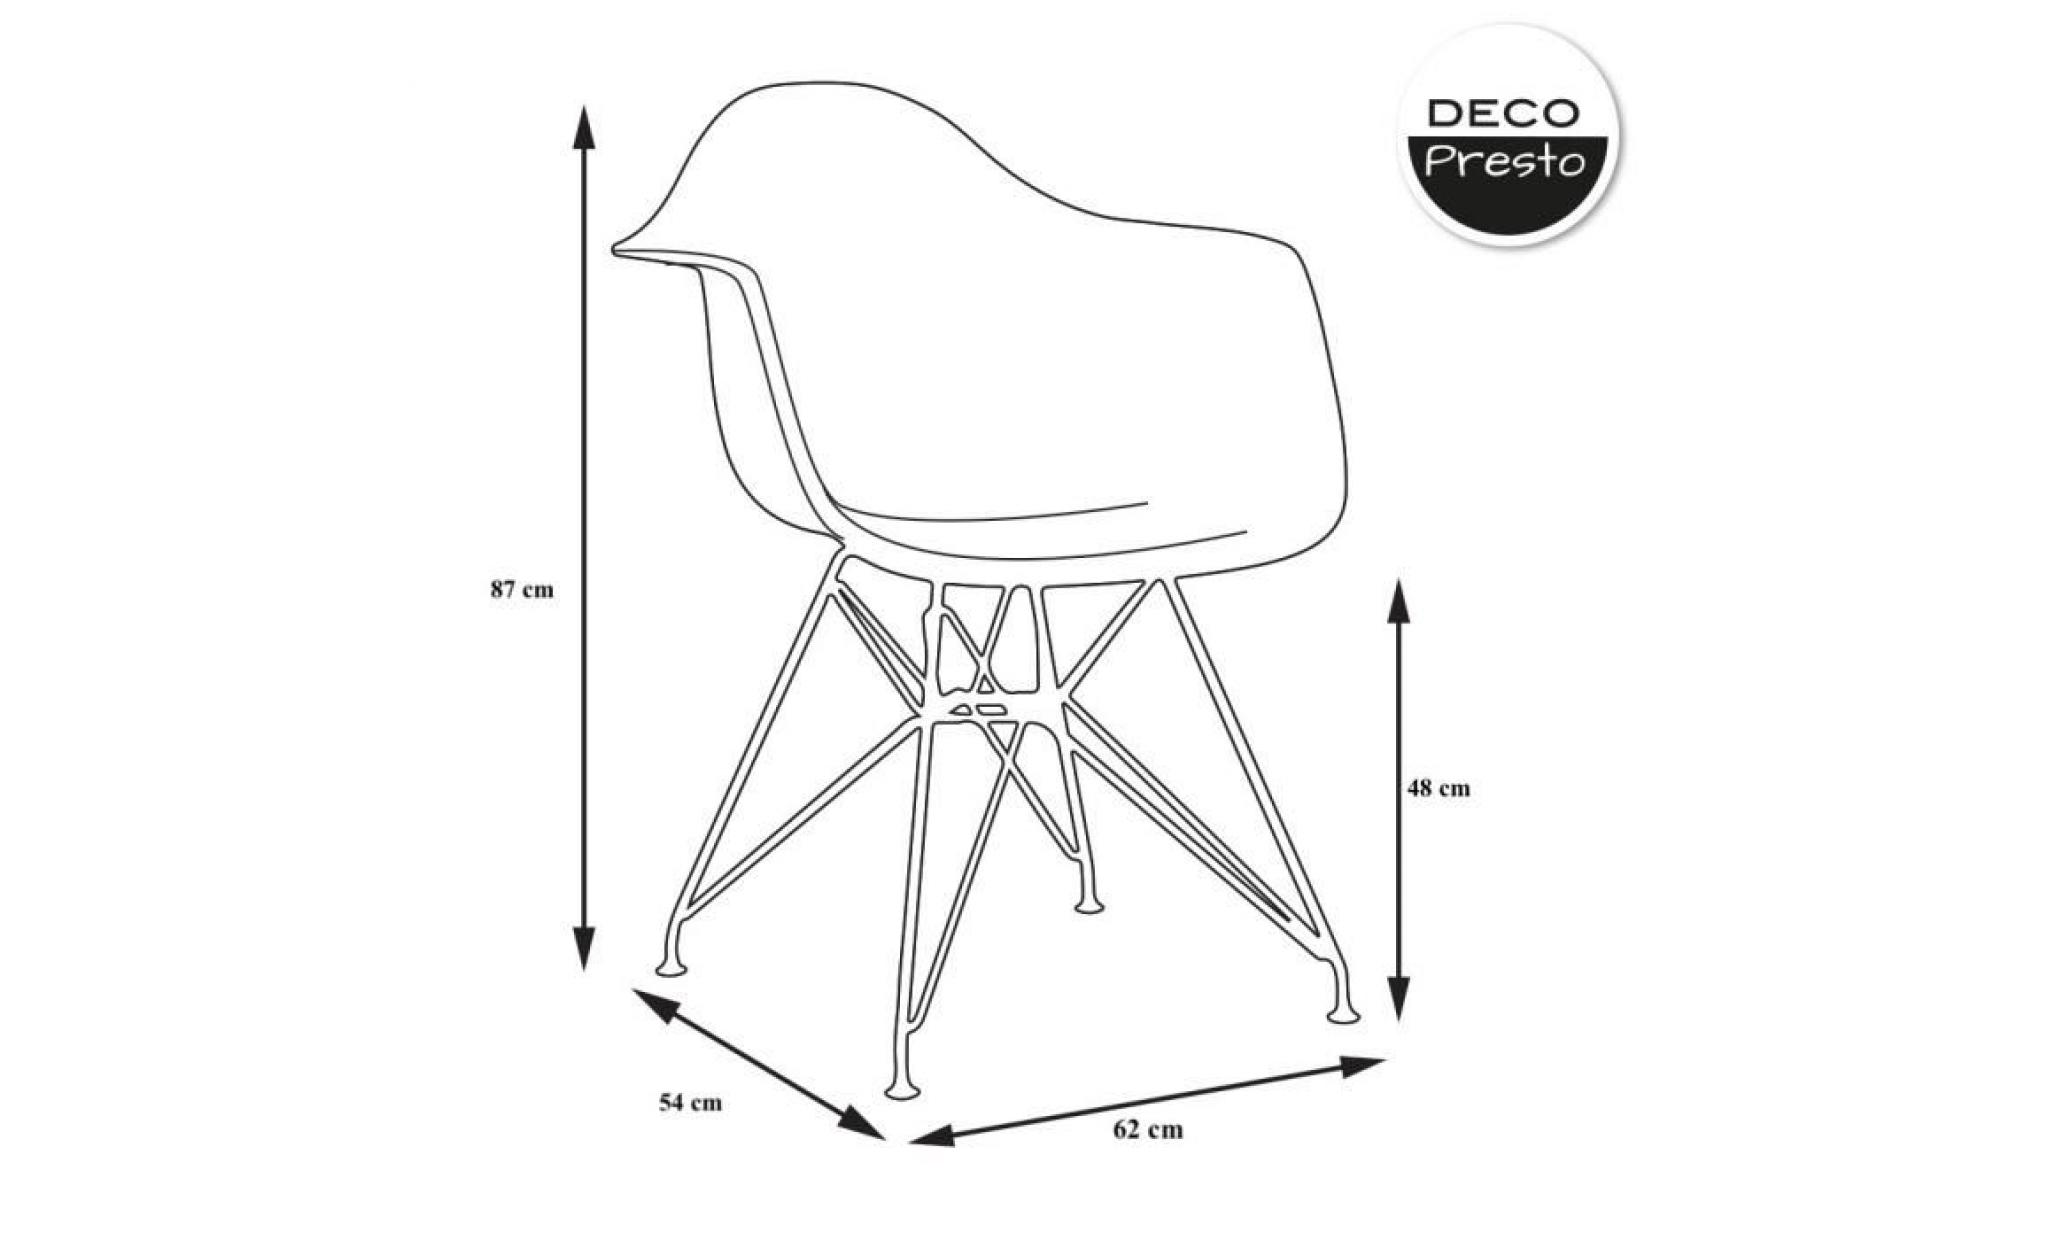 1 x fauteuil design  style  eiffel haut. 48 cm bordeaux pieds: acier noir decopresto dp darb48 bx 1 pas cher